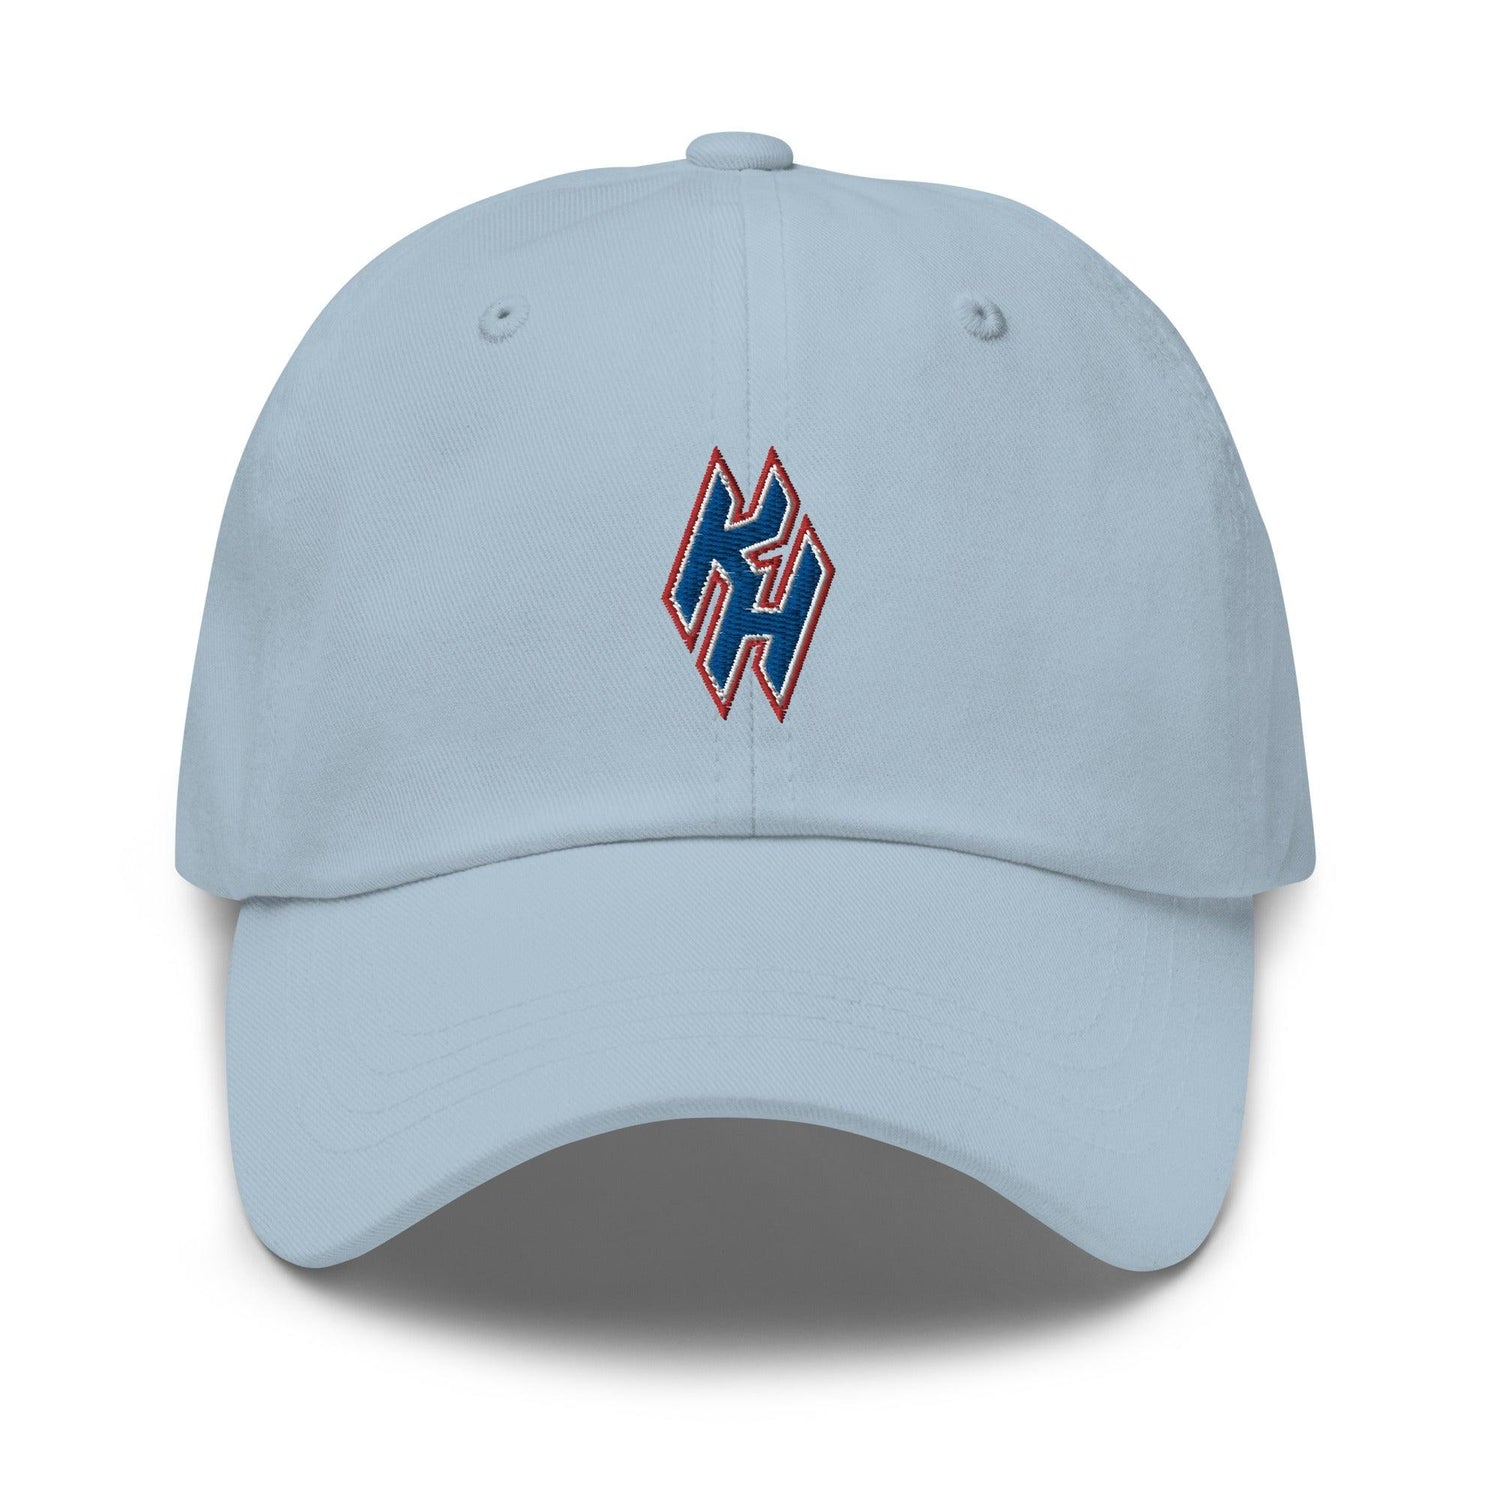 Kody Hoese "Essential" hat - Fan Arch